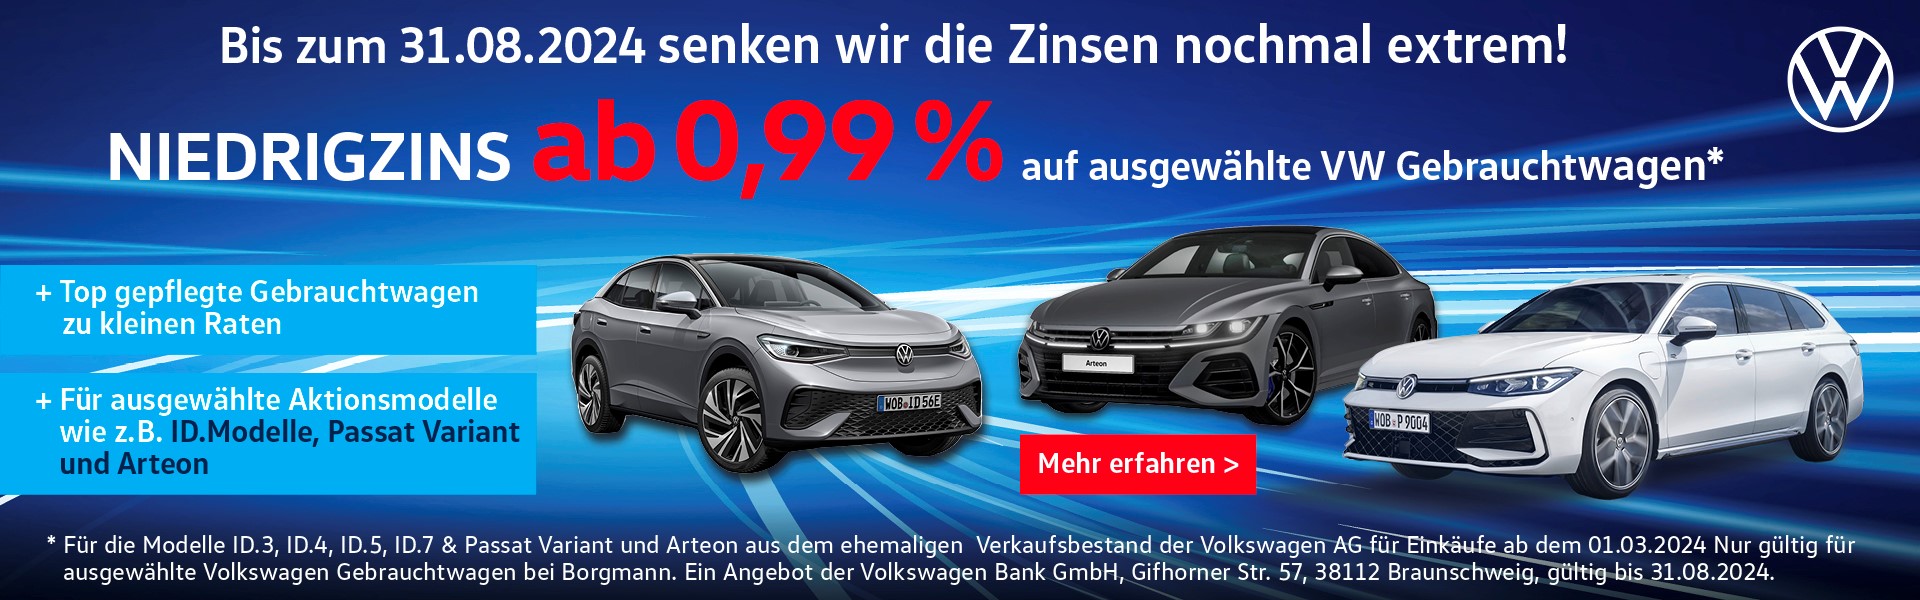 Ab 0,99% auf ausgewählte VW Gebrauchtwagen